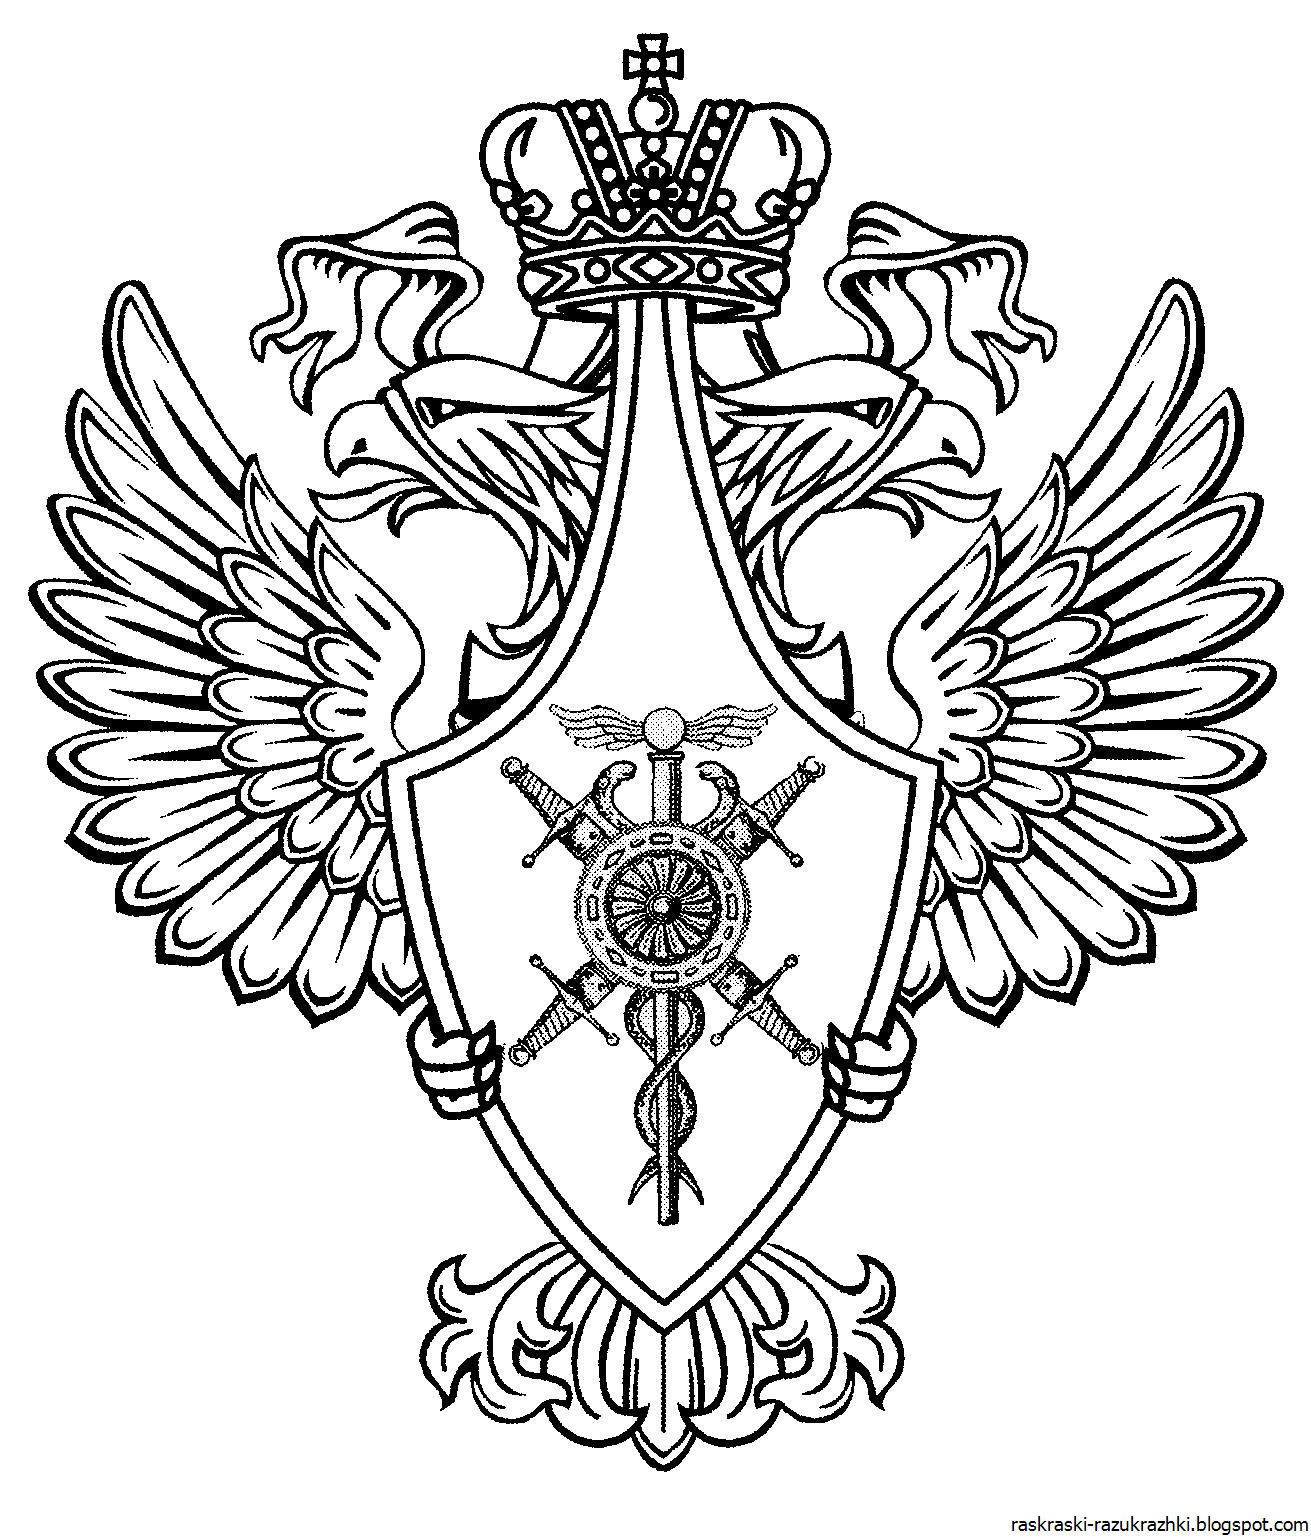 Как раскрасить герб россии цветной – Раскраска герб России